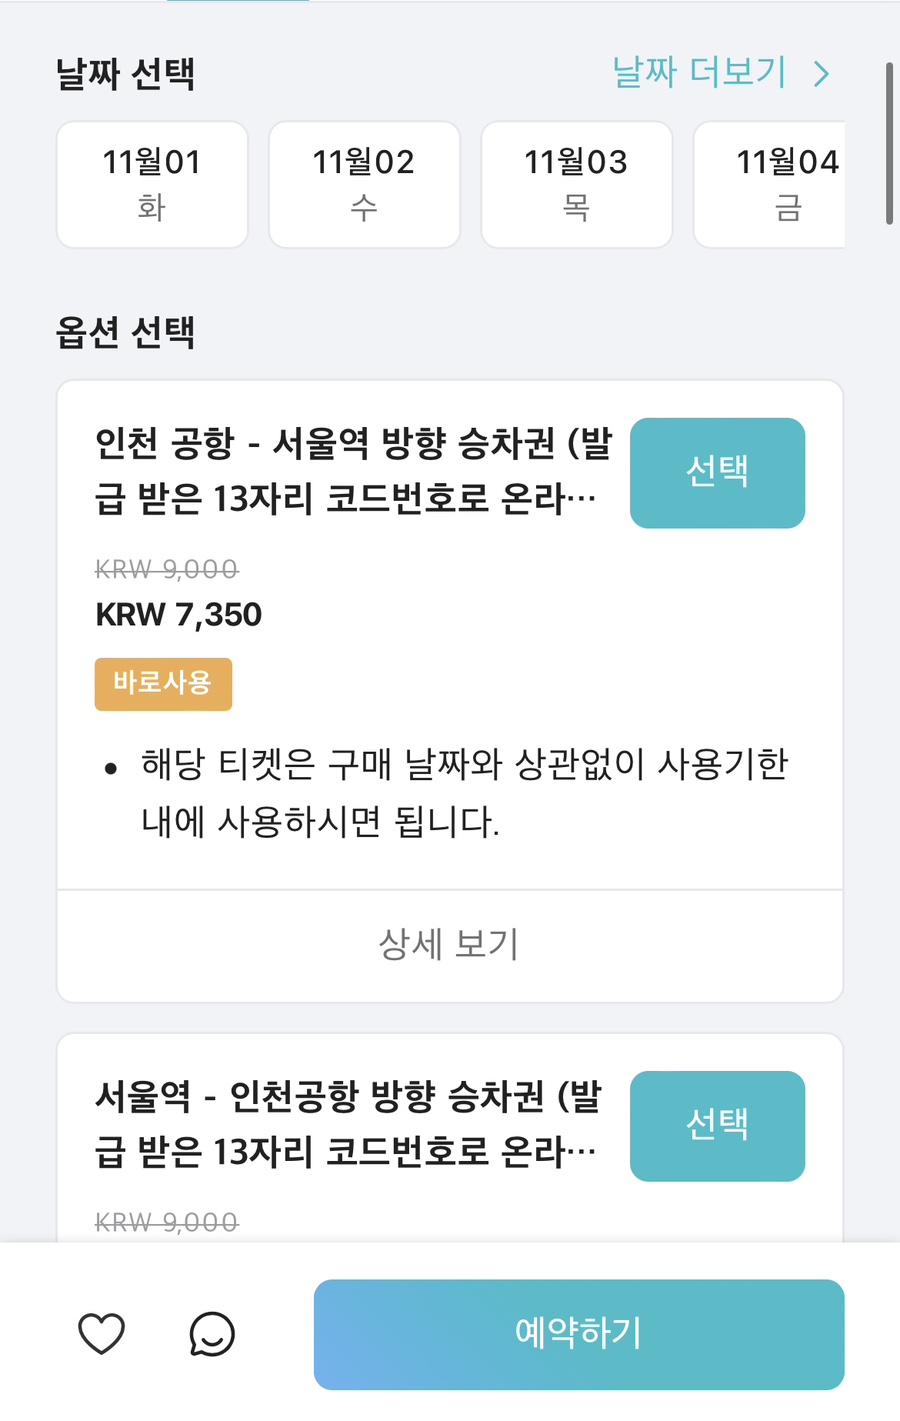 인천공항철도 시간표 요금 할인팁! 서울역에서 인천공항 직통열차